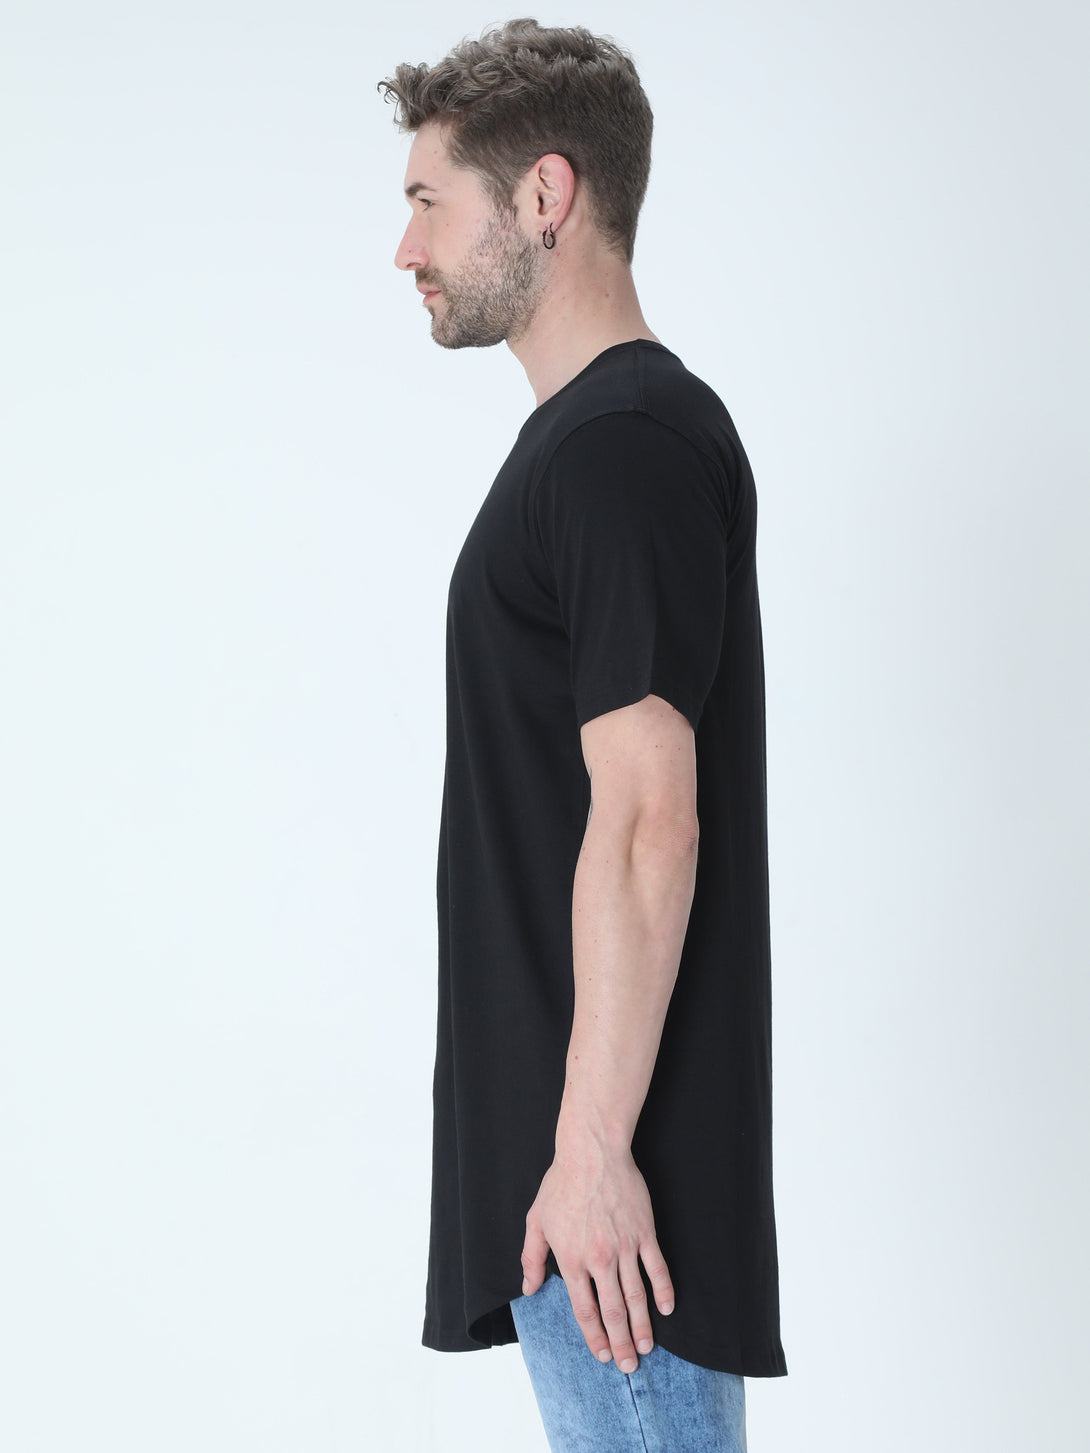 Black Longline T-Shirt For Men - WowWaves - 5